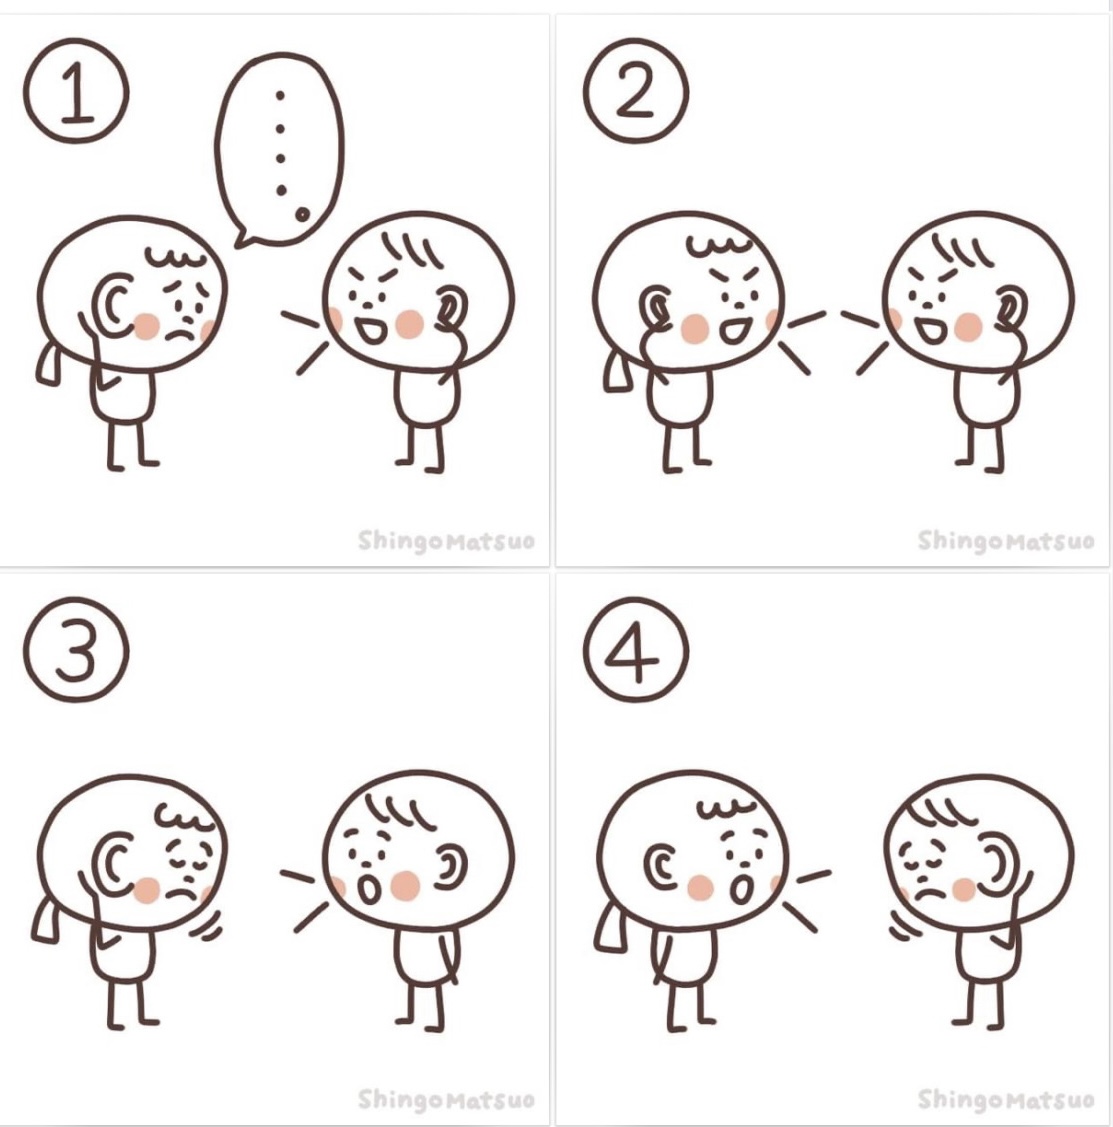 「相手が言いたいことを聞く聞かない関係」をイラストでイメージ化